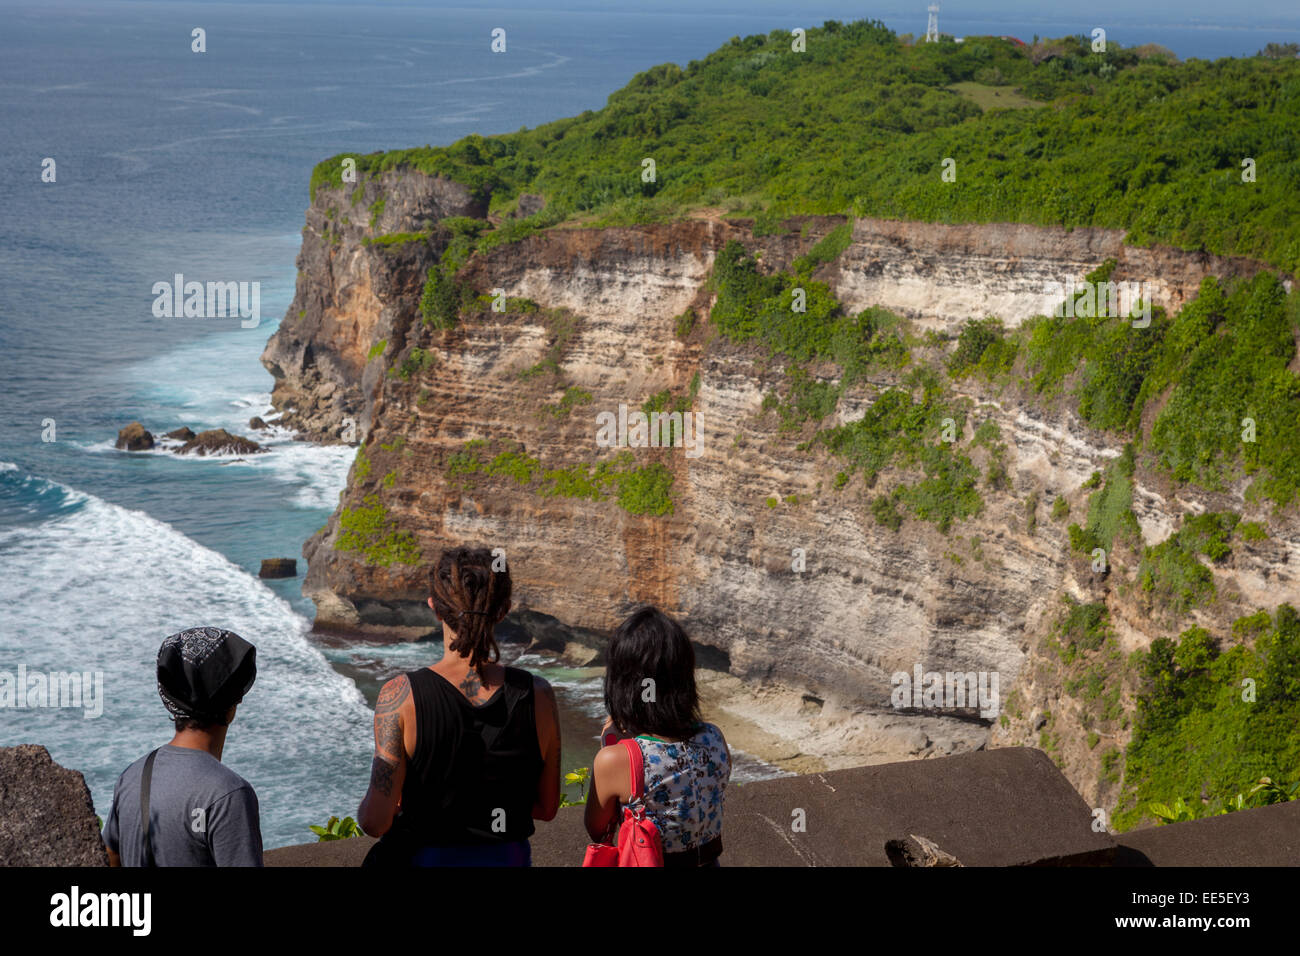 Los turistas disfrutan de las vistas panorámicas de Uluwatu, Bali. Foto de stock